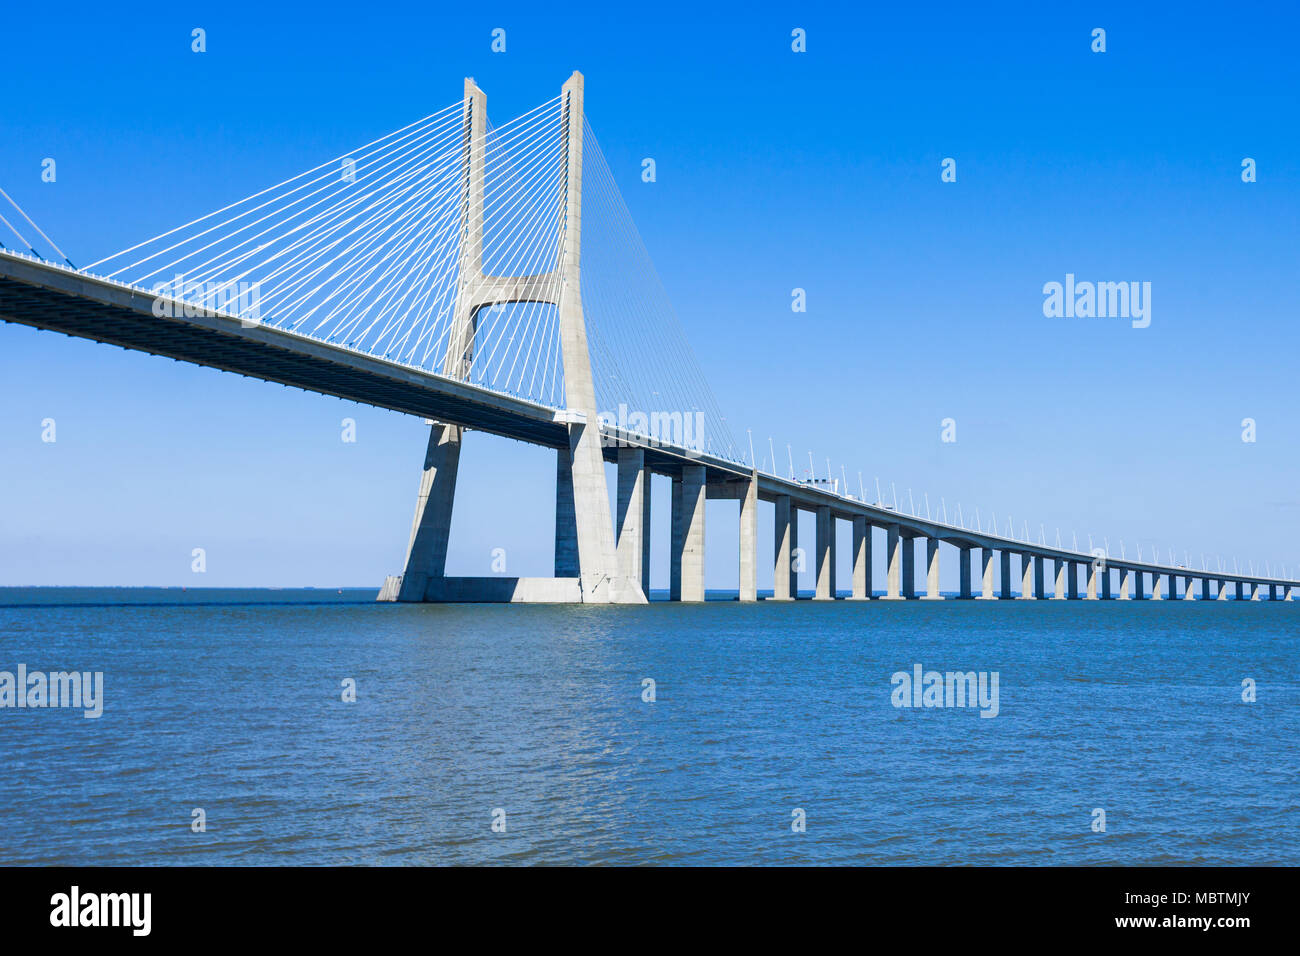 El puente más largo de europa fotografías e imágenes de alta resolución -  Alamy